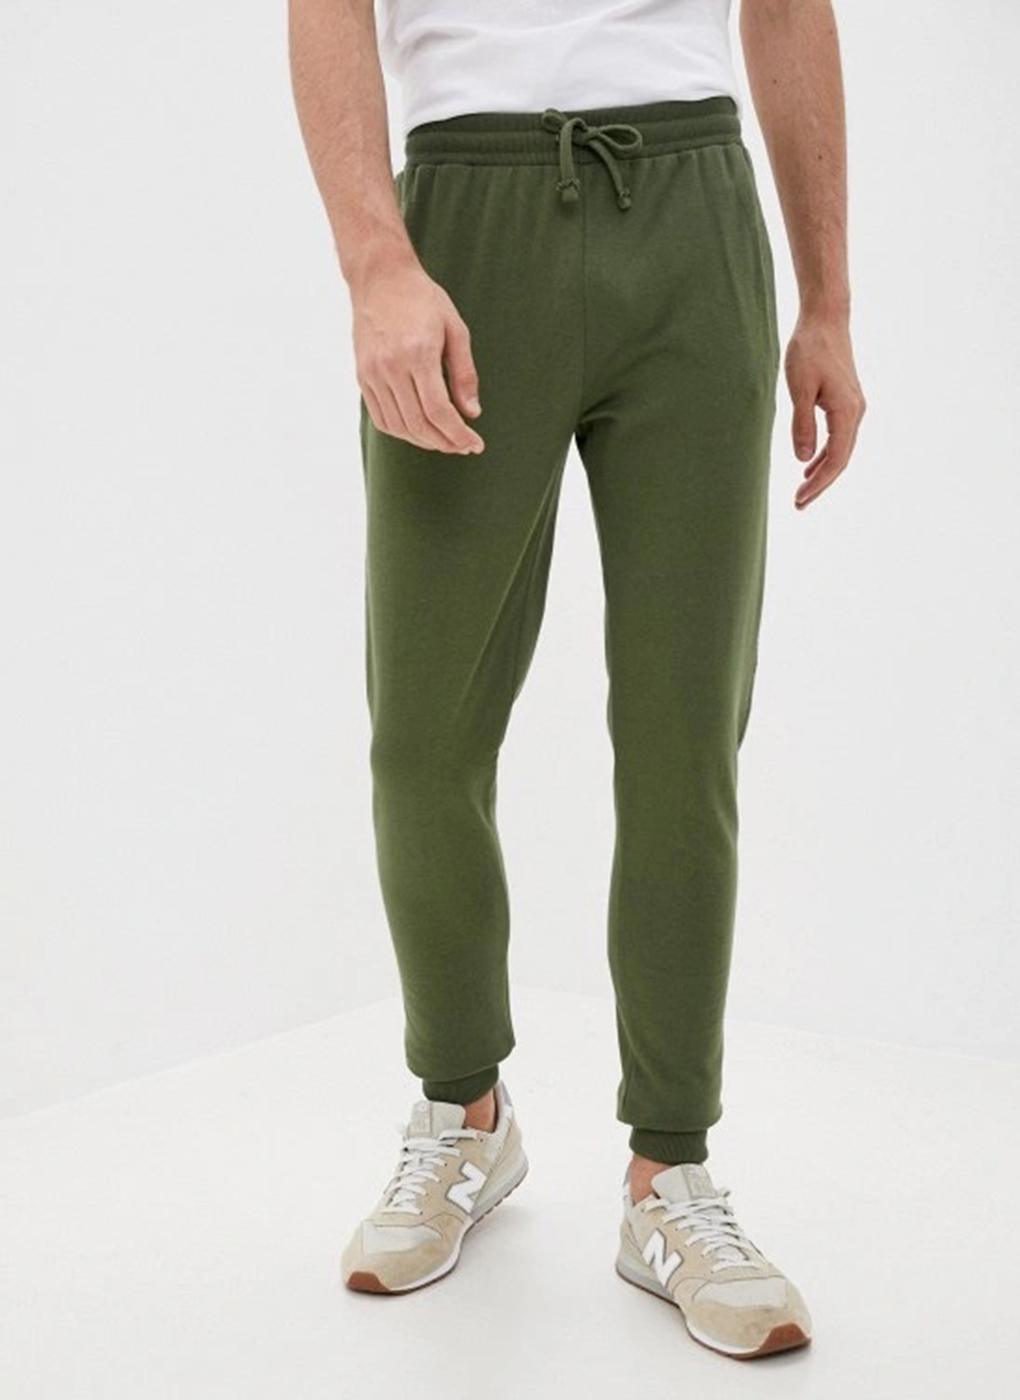 фото Спортивные брюки мужские blacksi 55449 зеленые 54 ru